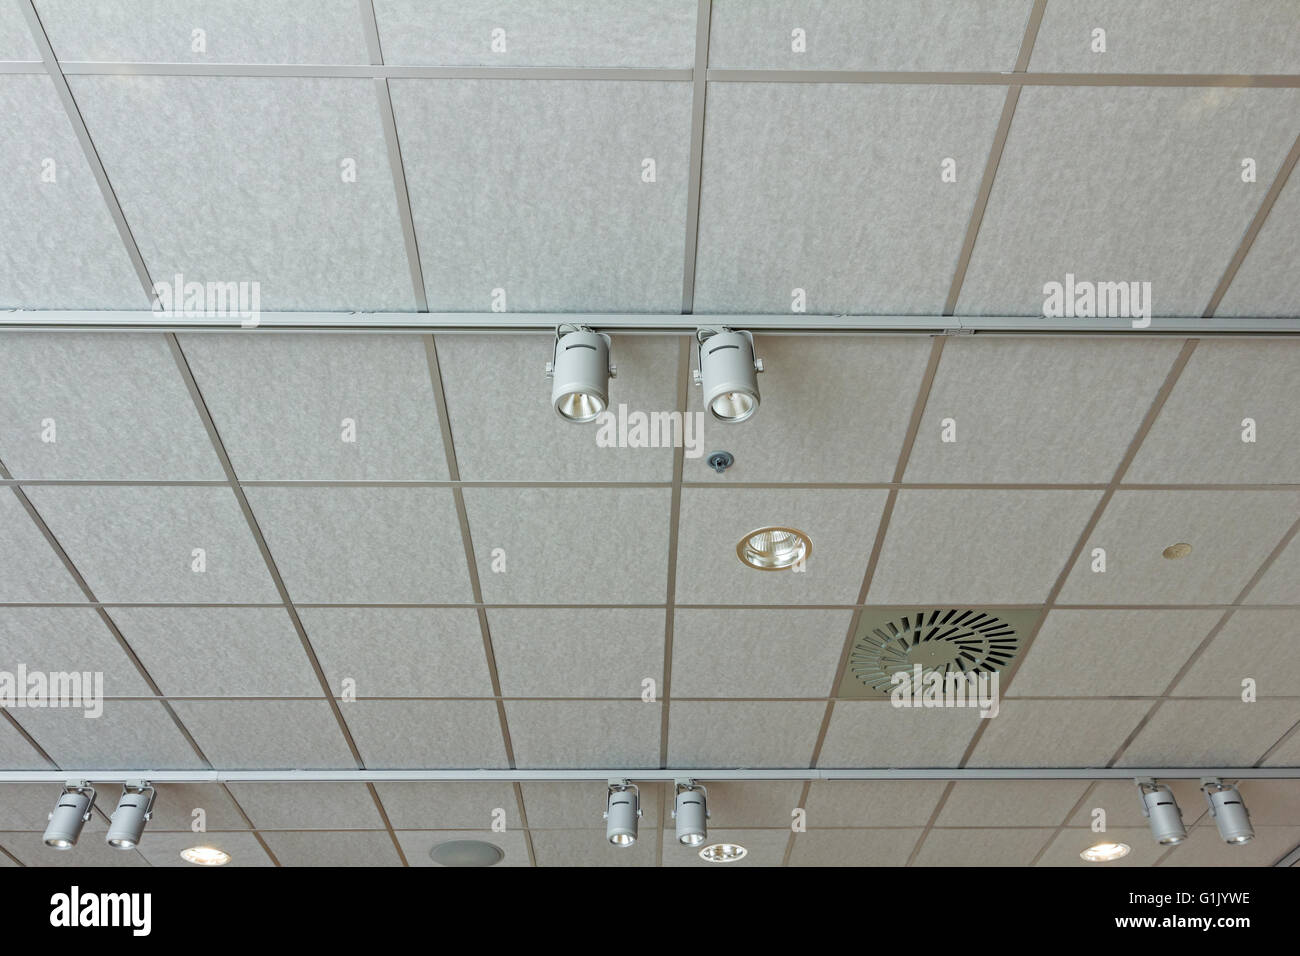 Office-Decke verfügt über moderne Licht- und die Luke für die  Konditionierung System Lüftung Stockfotografie - Alamy